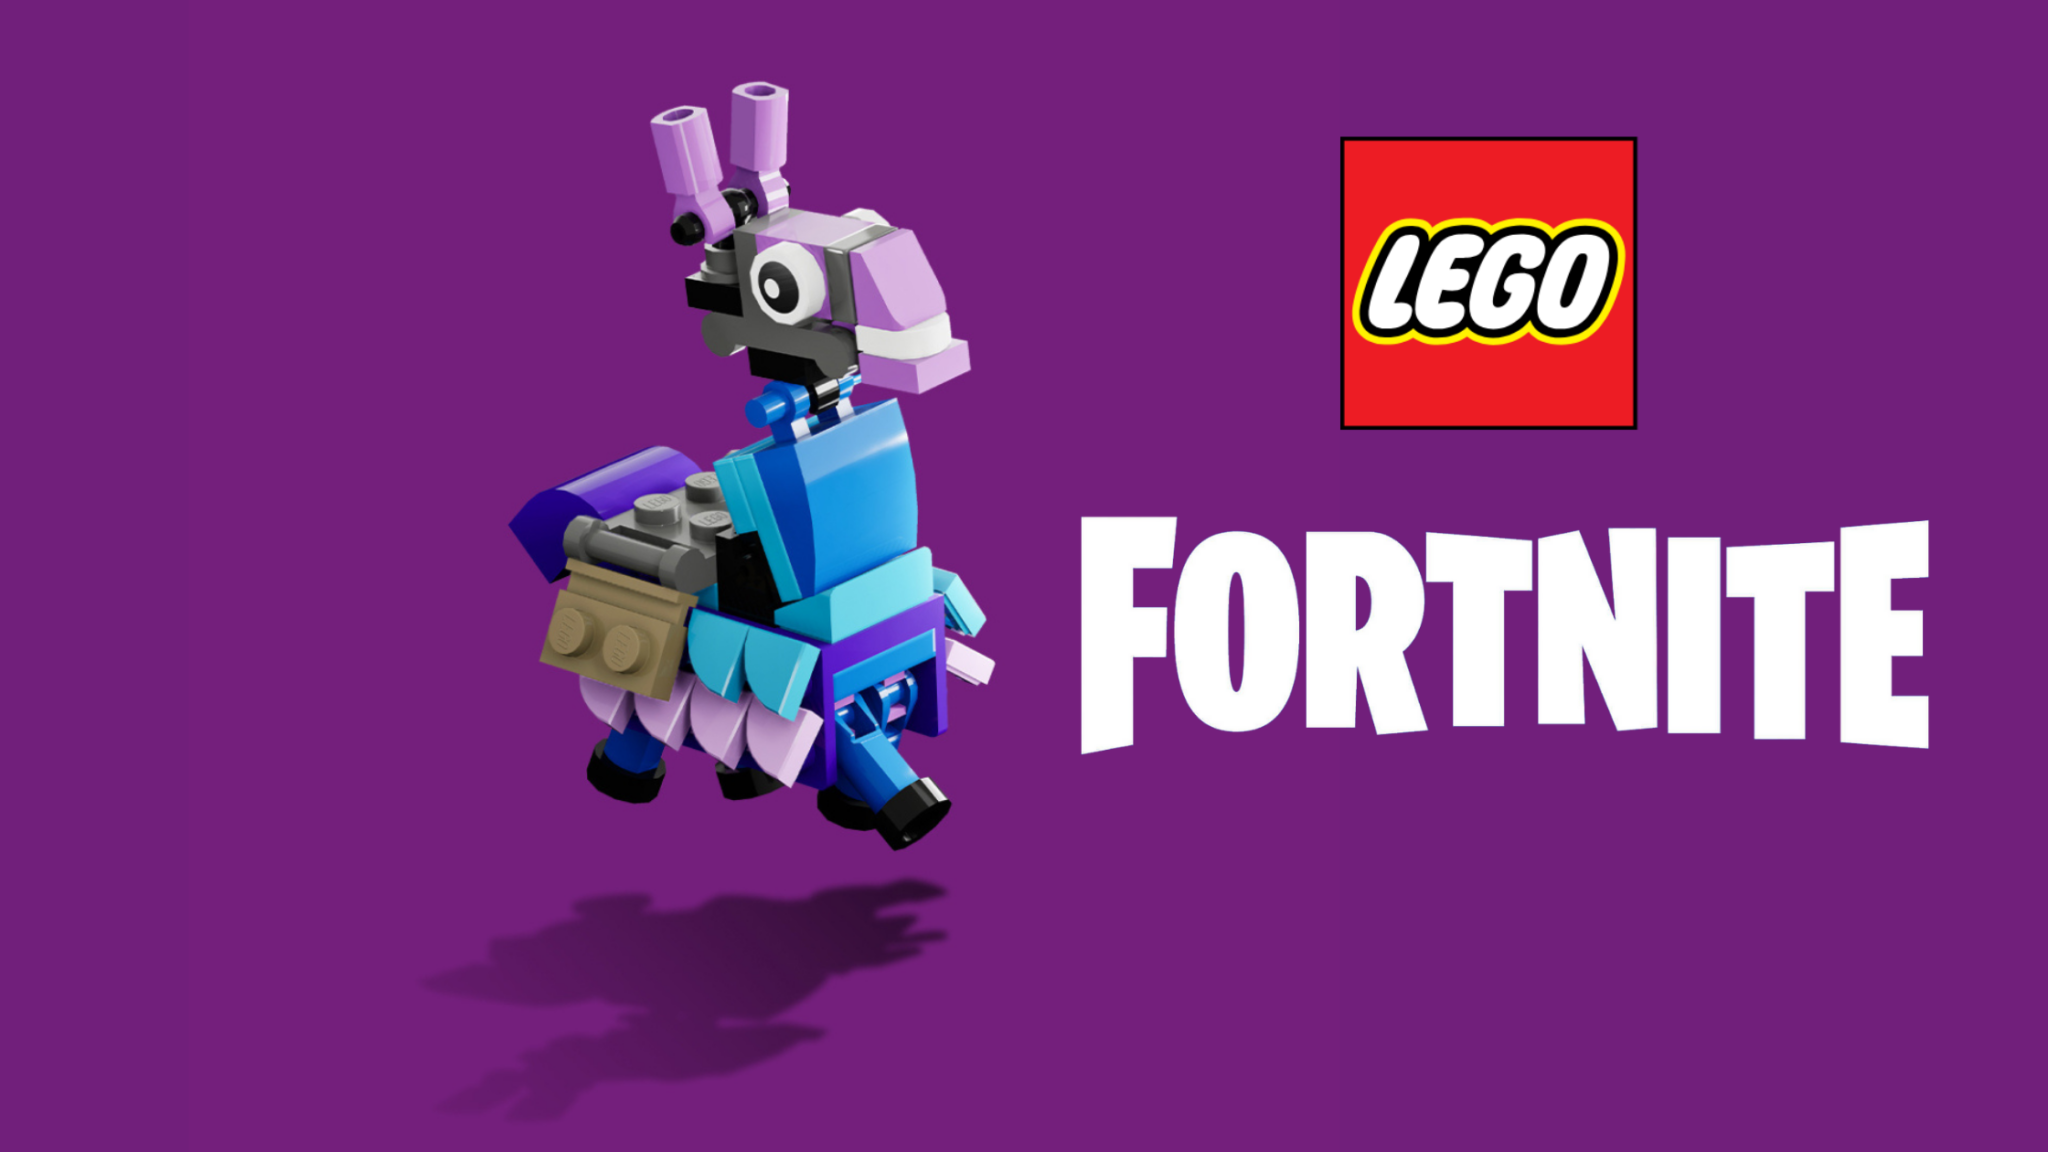 Fortnite e LEGO: un tweet conferma la partnership